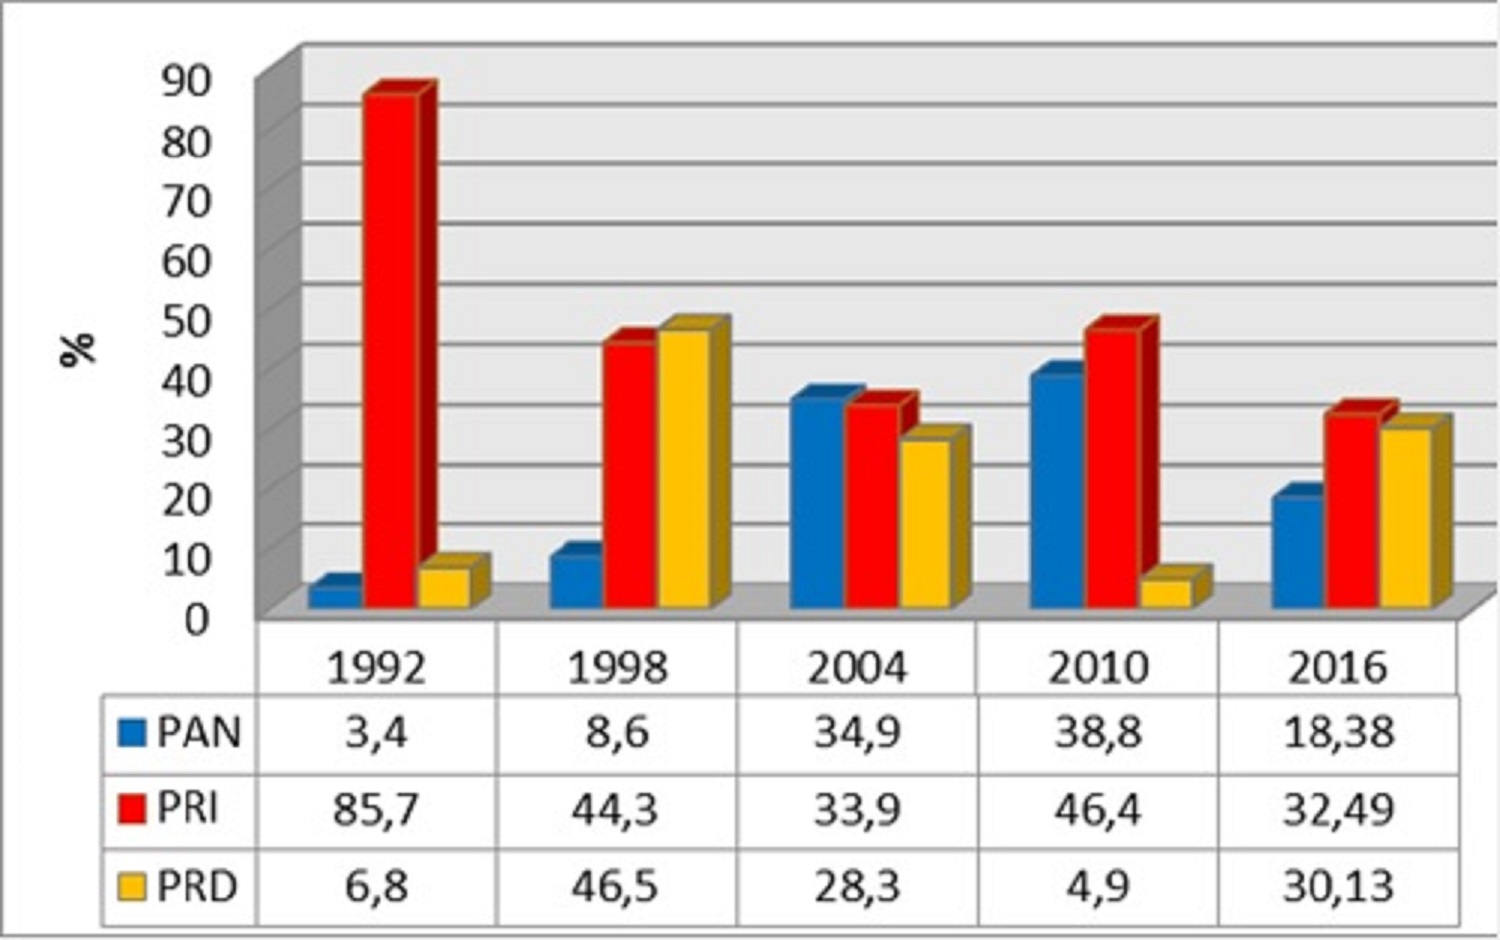 Comportamiento de los tres
partidos políticos más importantes en las elecciones a Gobernador (PAN, PRI Y
PRD), 1992-2016, Tlaxcala